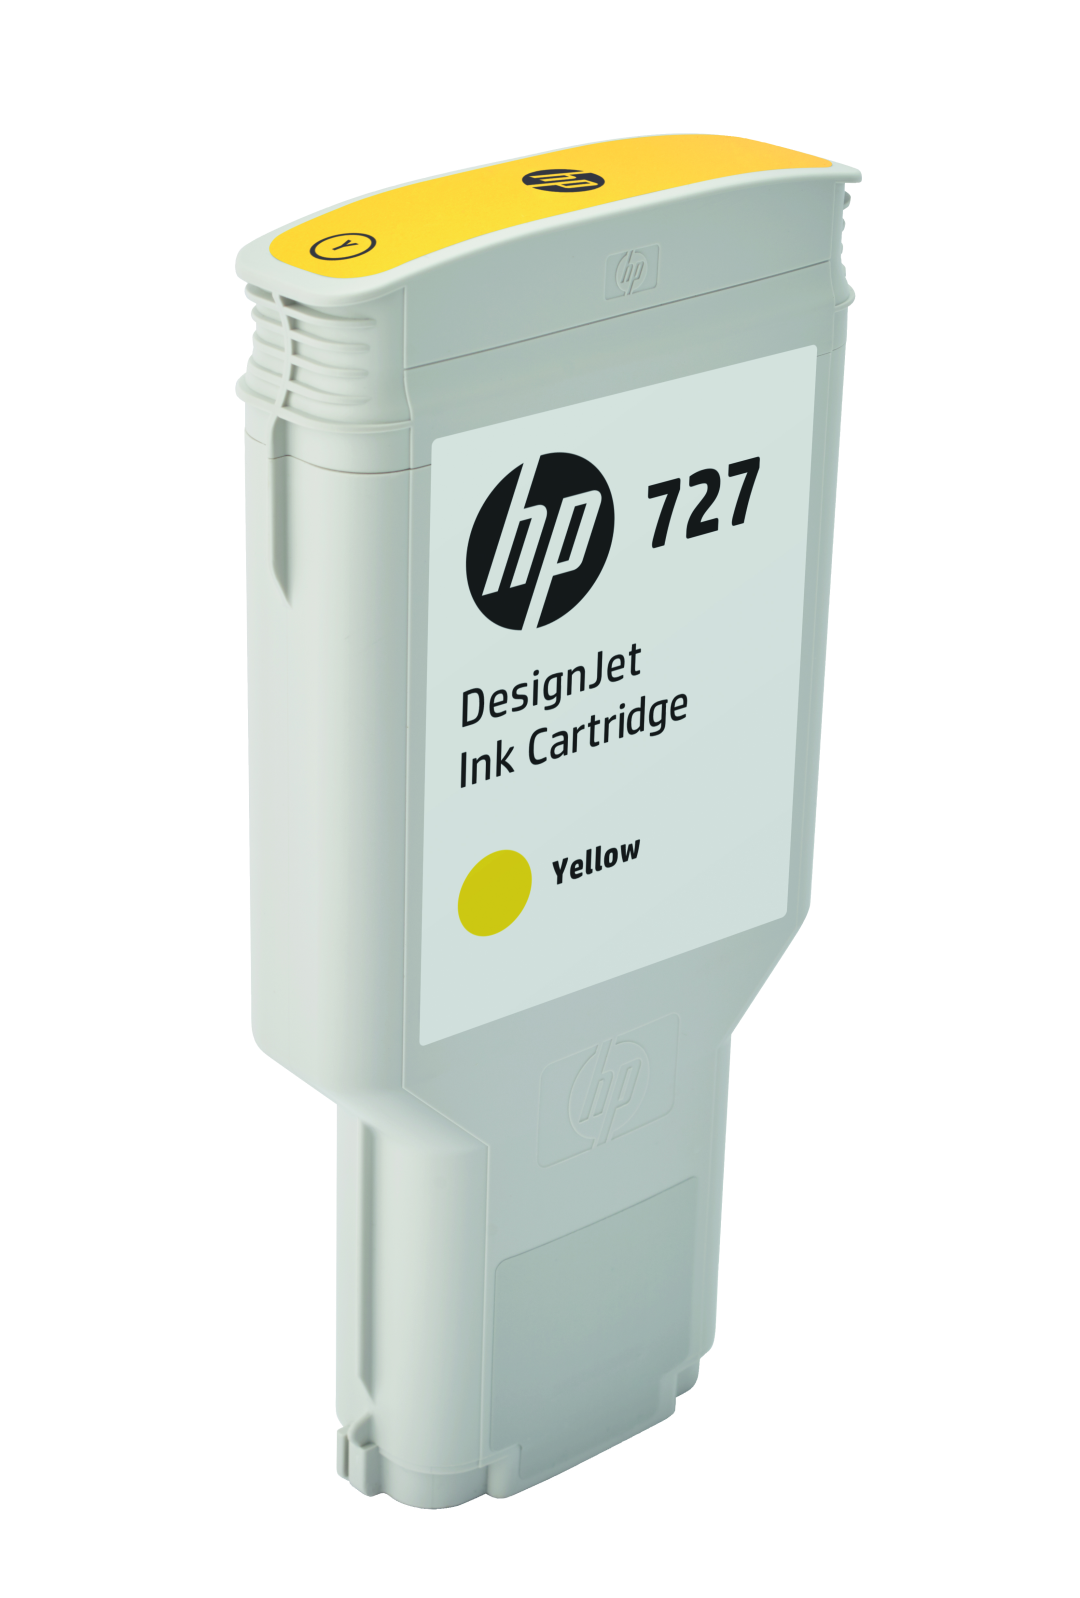 Картридж для печати HP Картридж HP 727 F9J78A вид печати струйный, цвет Желтый, емкость 300мл.